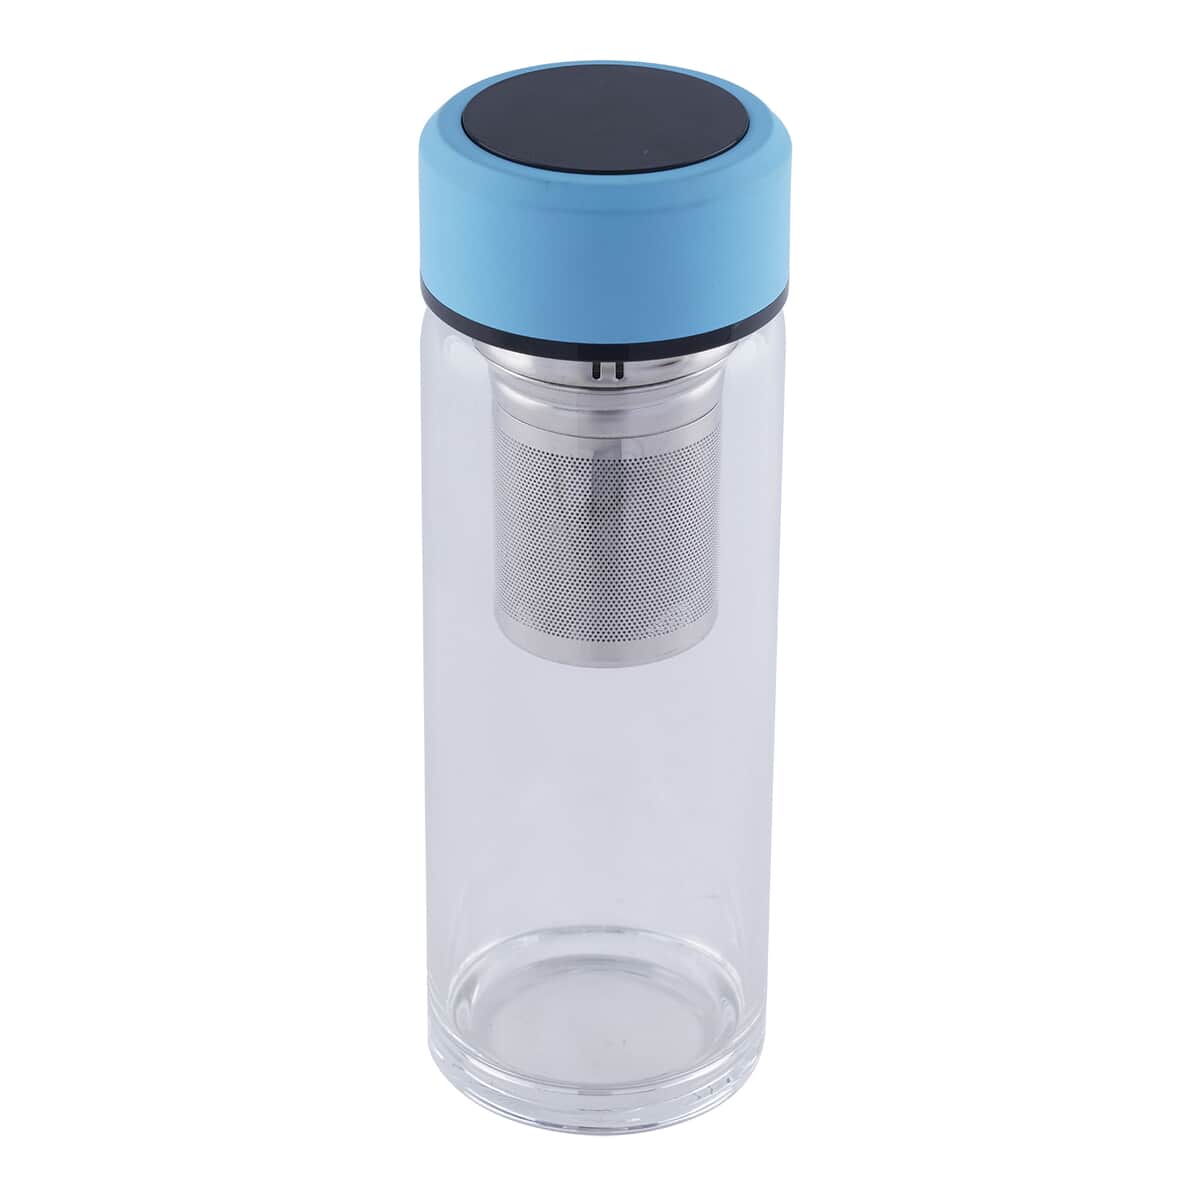 Elite Shungite Filter Infuser and Temperature Sensor Smart Water Bottle (LED Display, Long Filter) - Blue image number 0